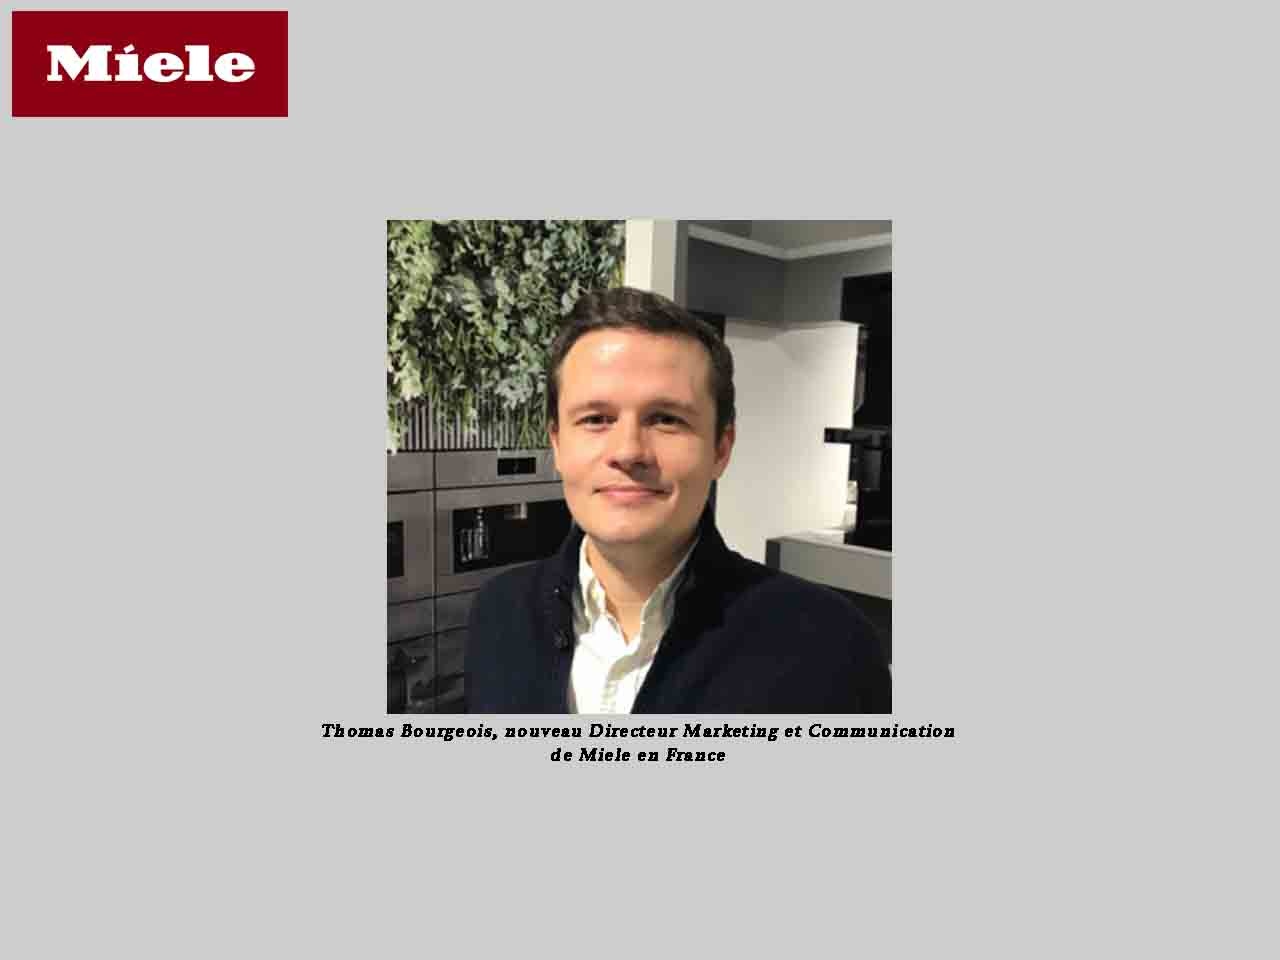 Thomas Bourgeois est nommé Directeur Marketing et Communication de Miele en France